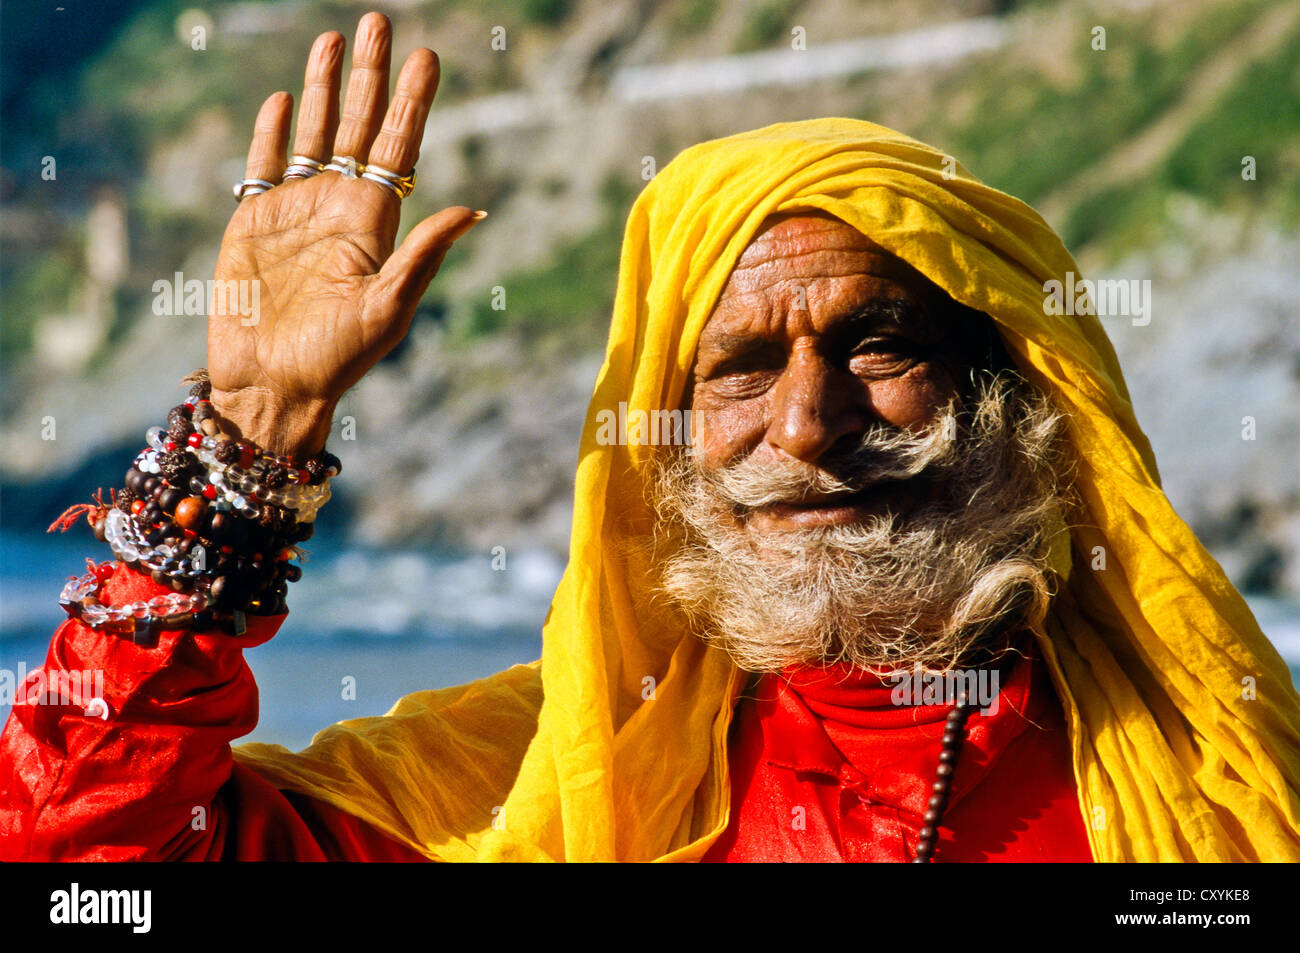 Sadhu, saint homme, forme, au confluent des rivières sainte et Alakananda Baghirati, Devprayag, Inde, Asie Banque D'Images